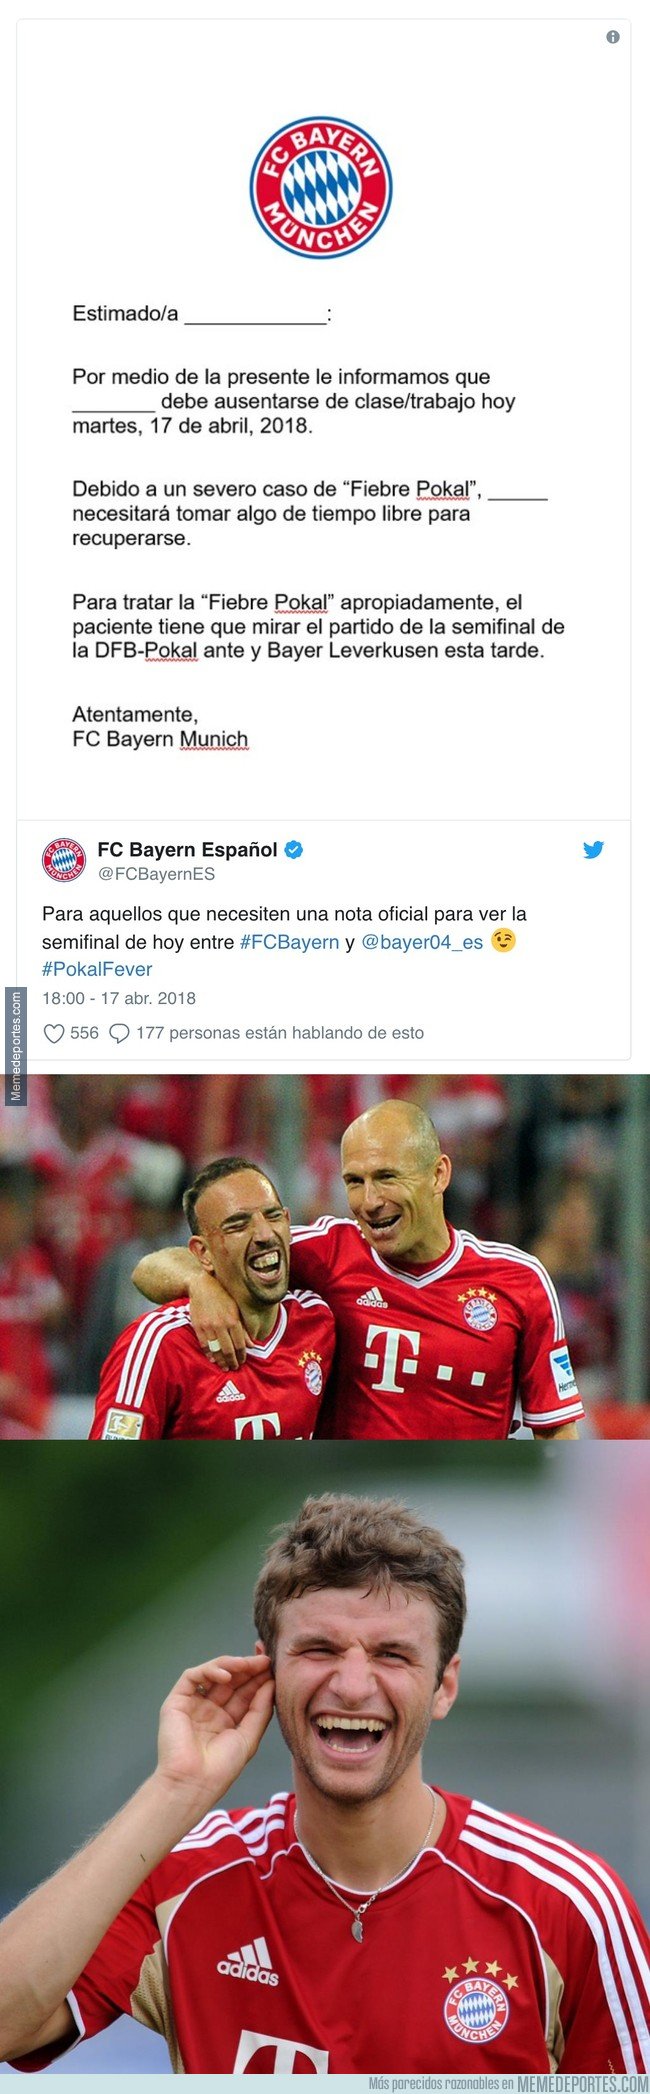 1030966 - La iniciativa del Bayern para ayudar a sus fans a faltar al trabajo con esta excusa muy creíble